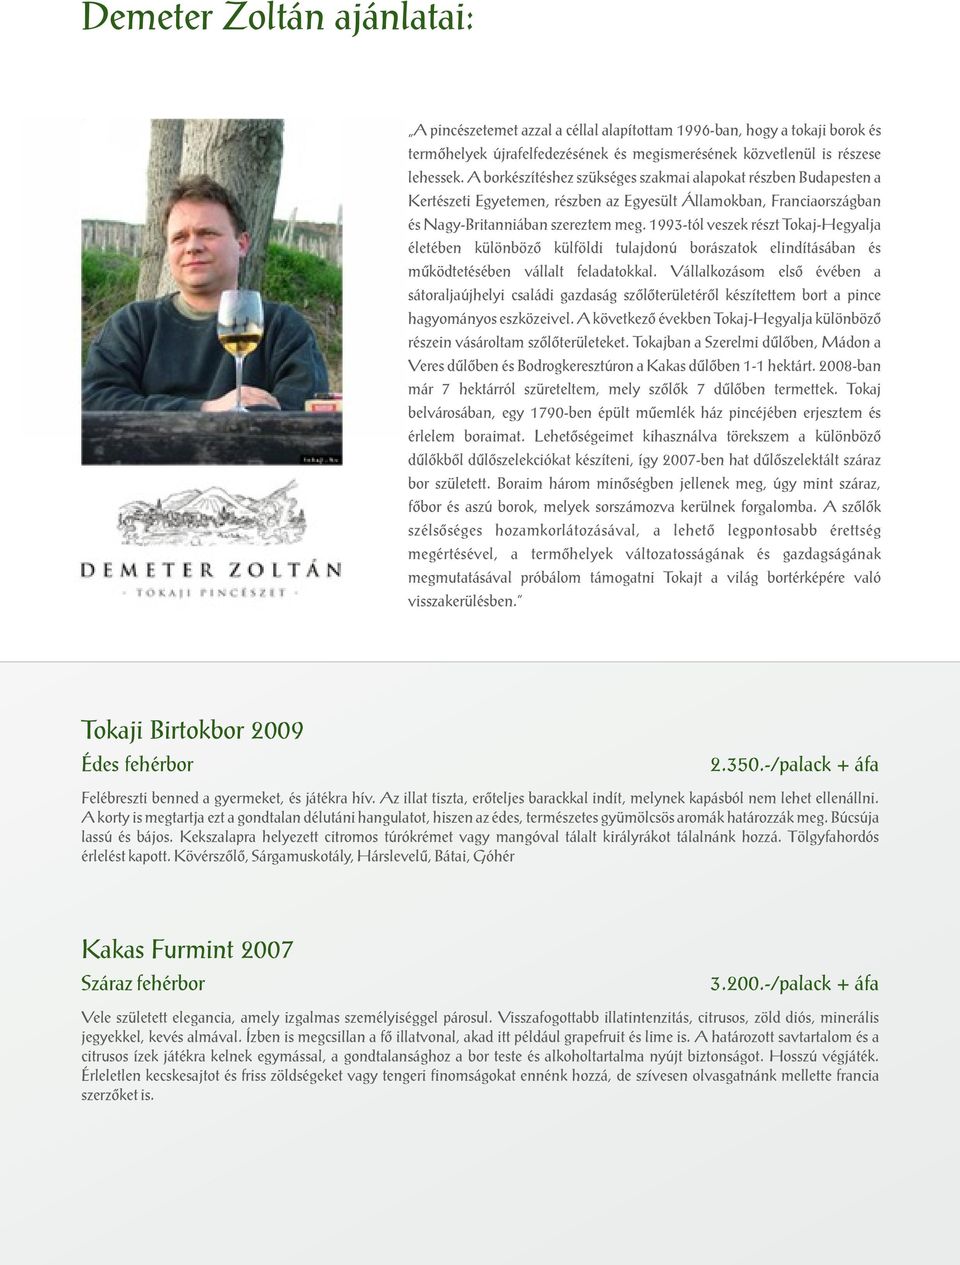 1993-tól veszek részt Tokaj-Hegyalja életében különböző külföldi tulajdonú borászatok elindításában és működtetésében vállalt feladatokkal.